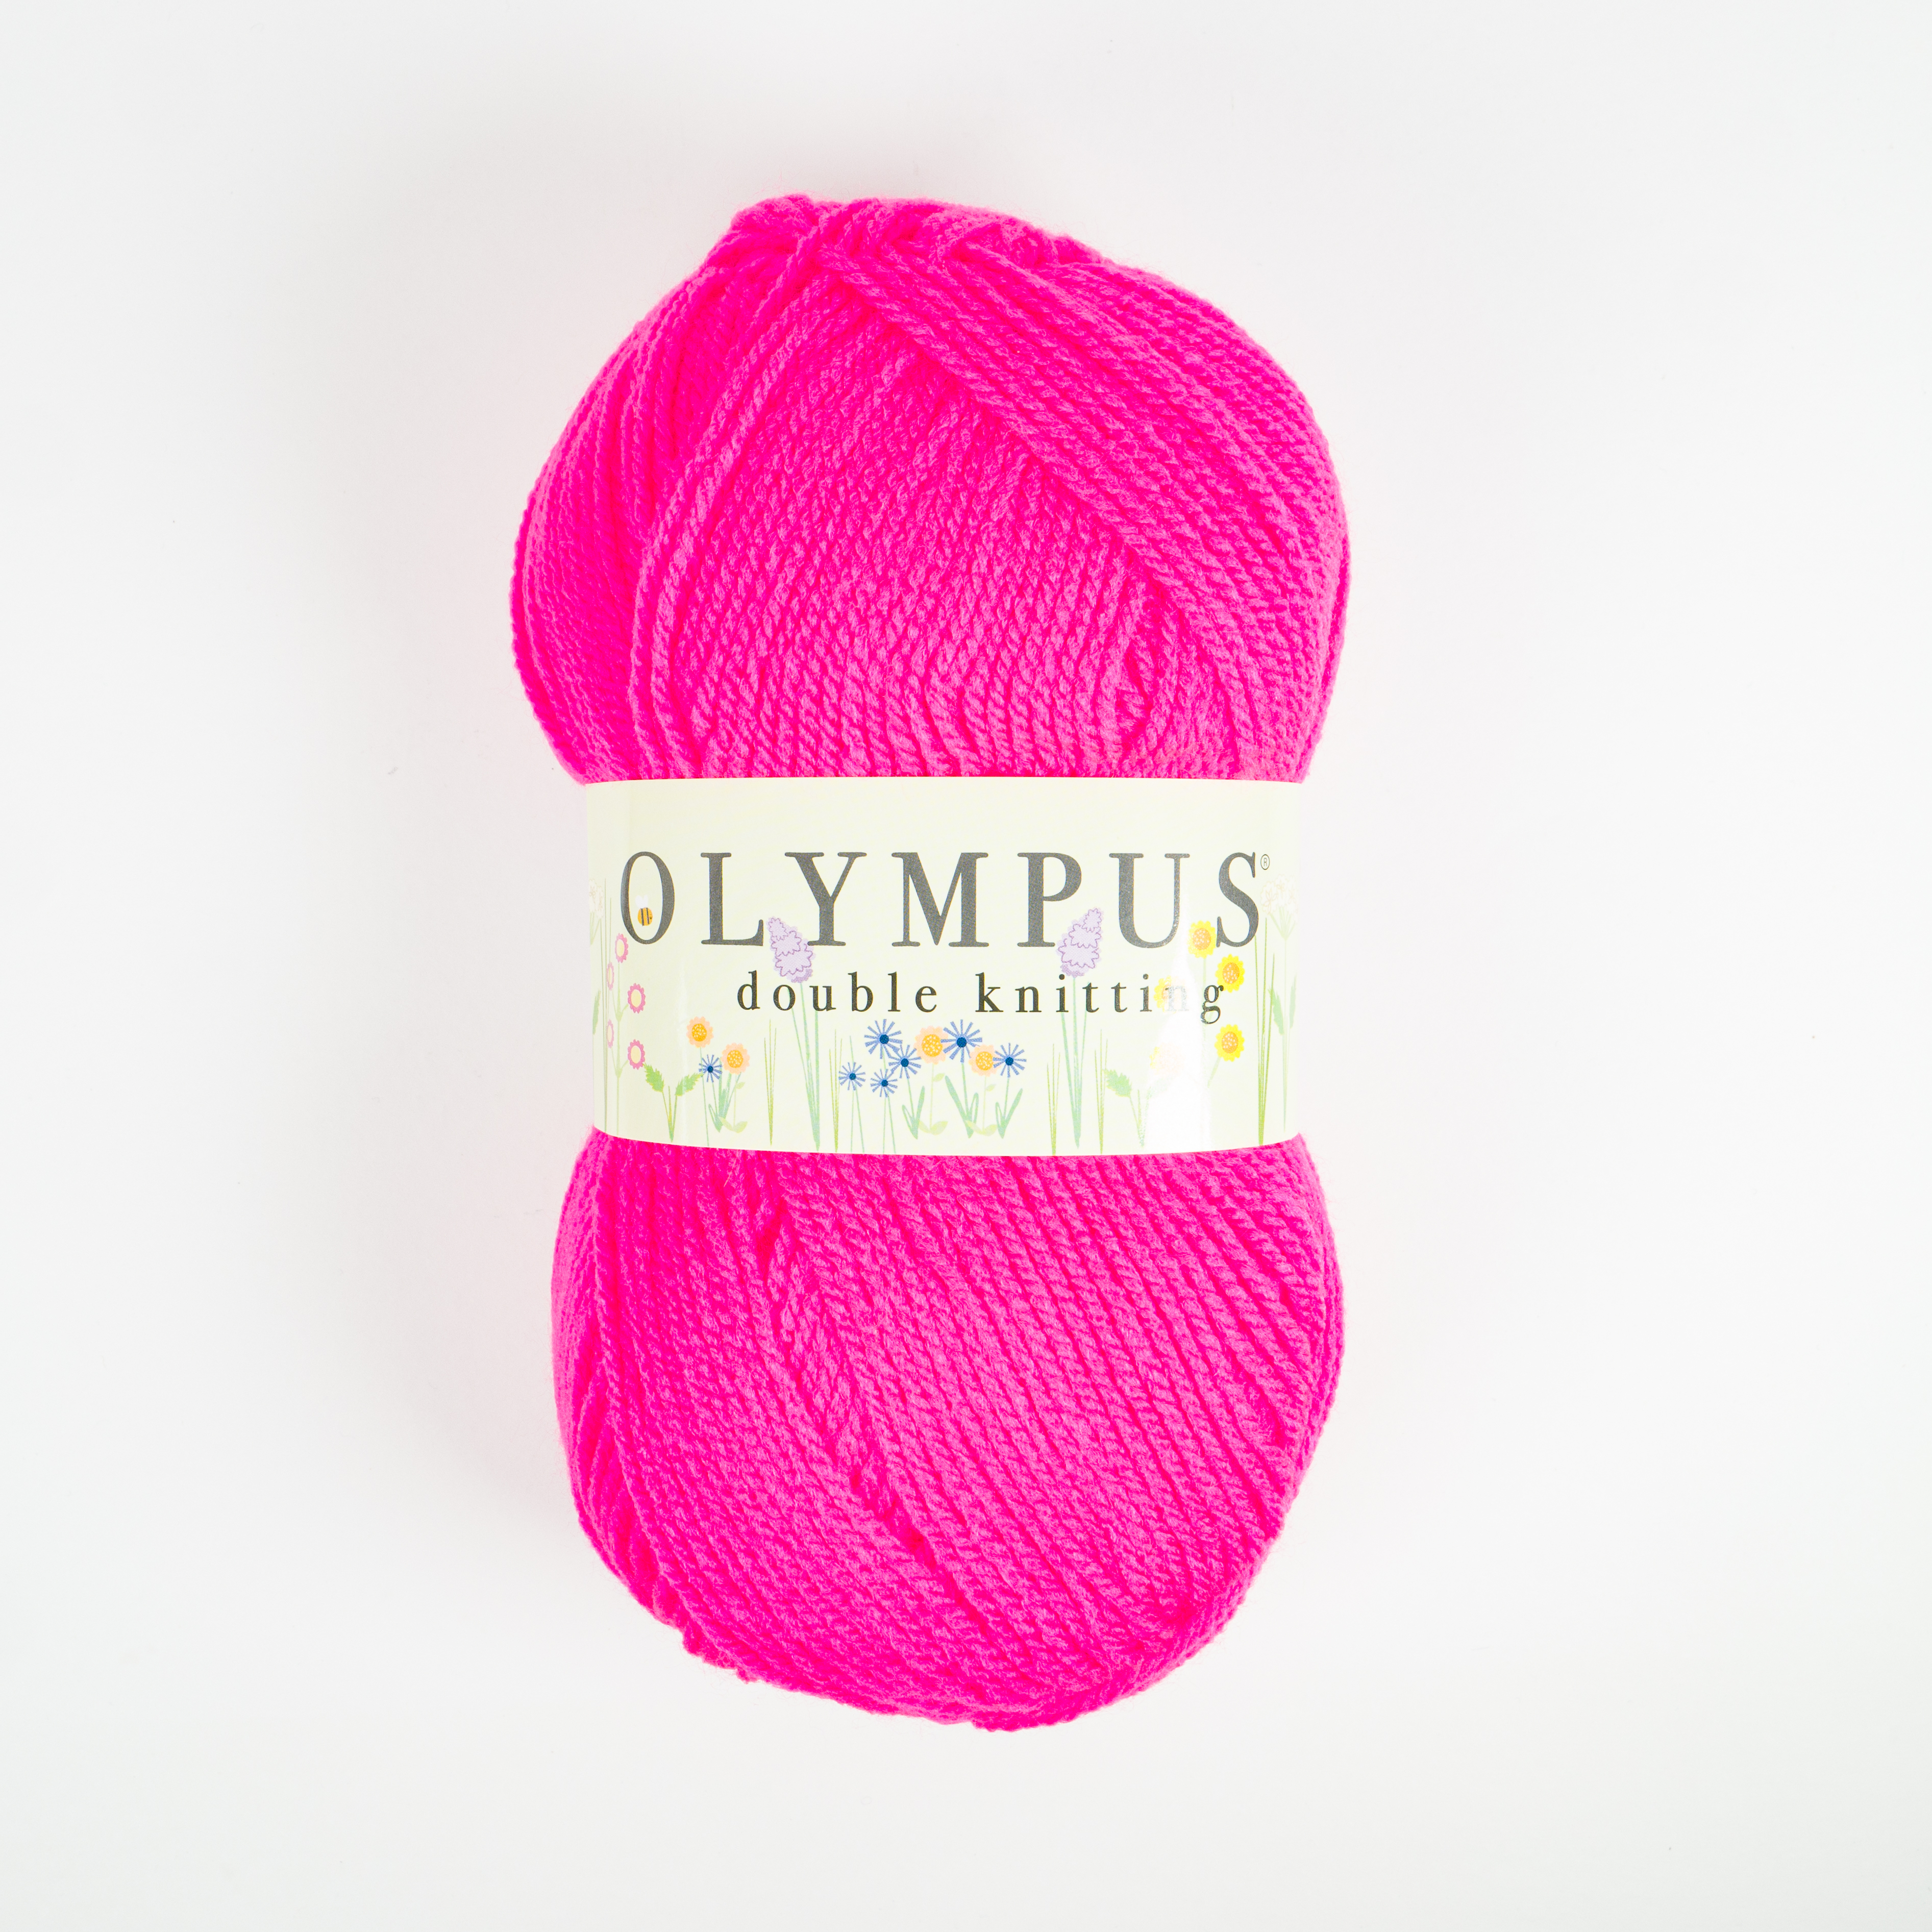 OLYMPUS DK 10X100G 965 Shocking Pink